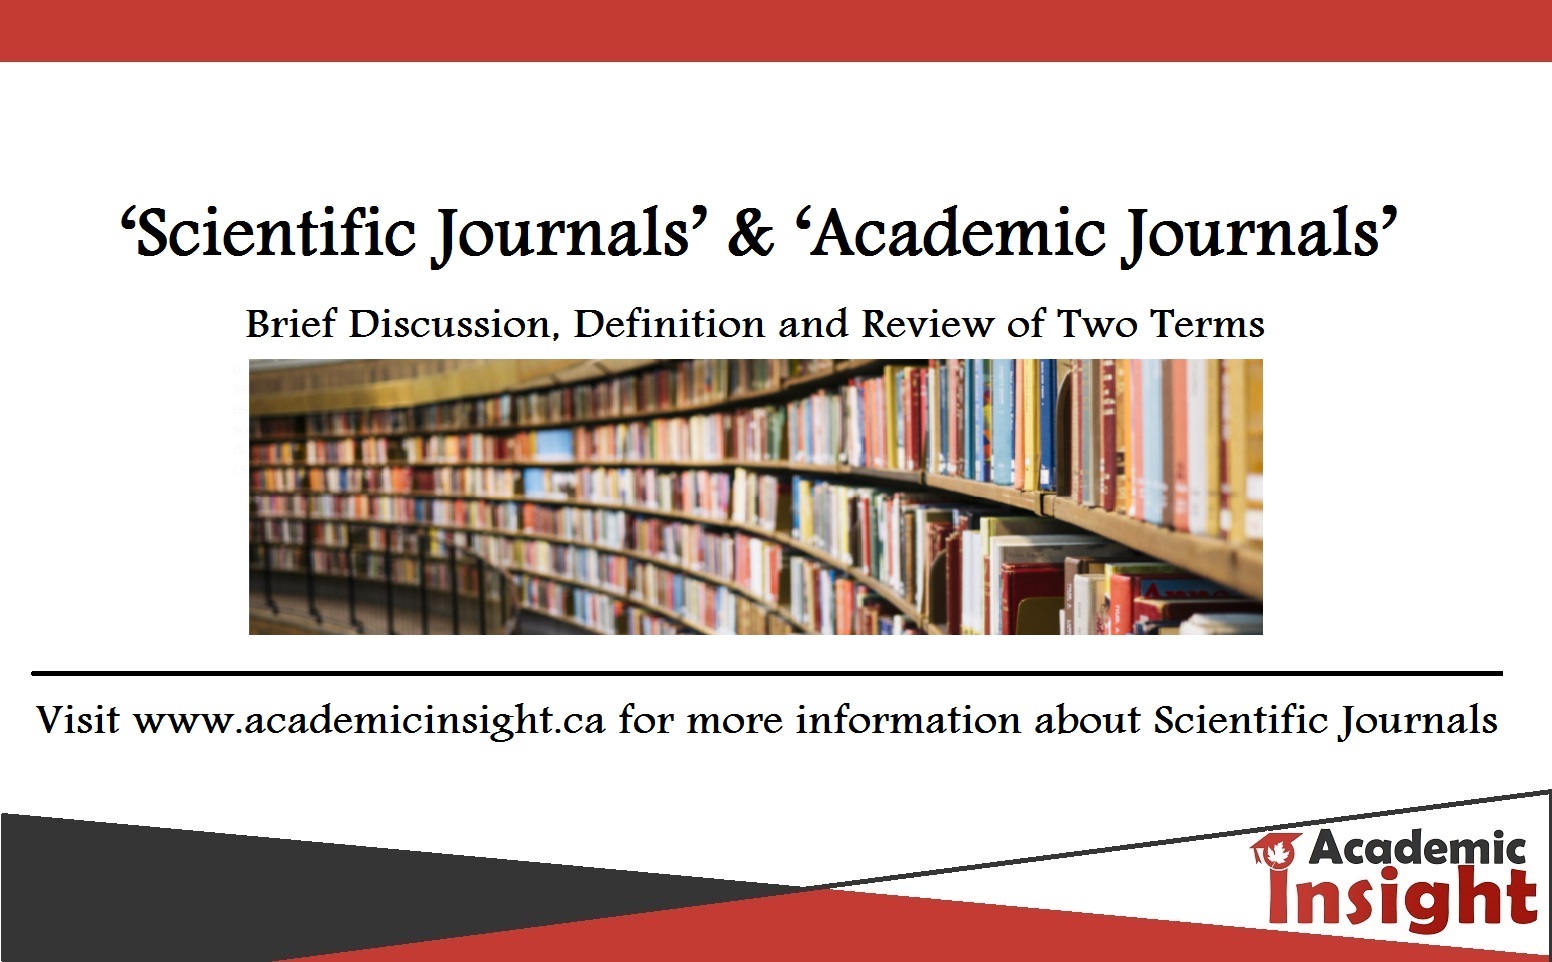 Academic and Scientific Journals